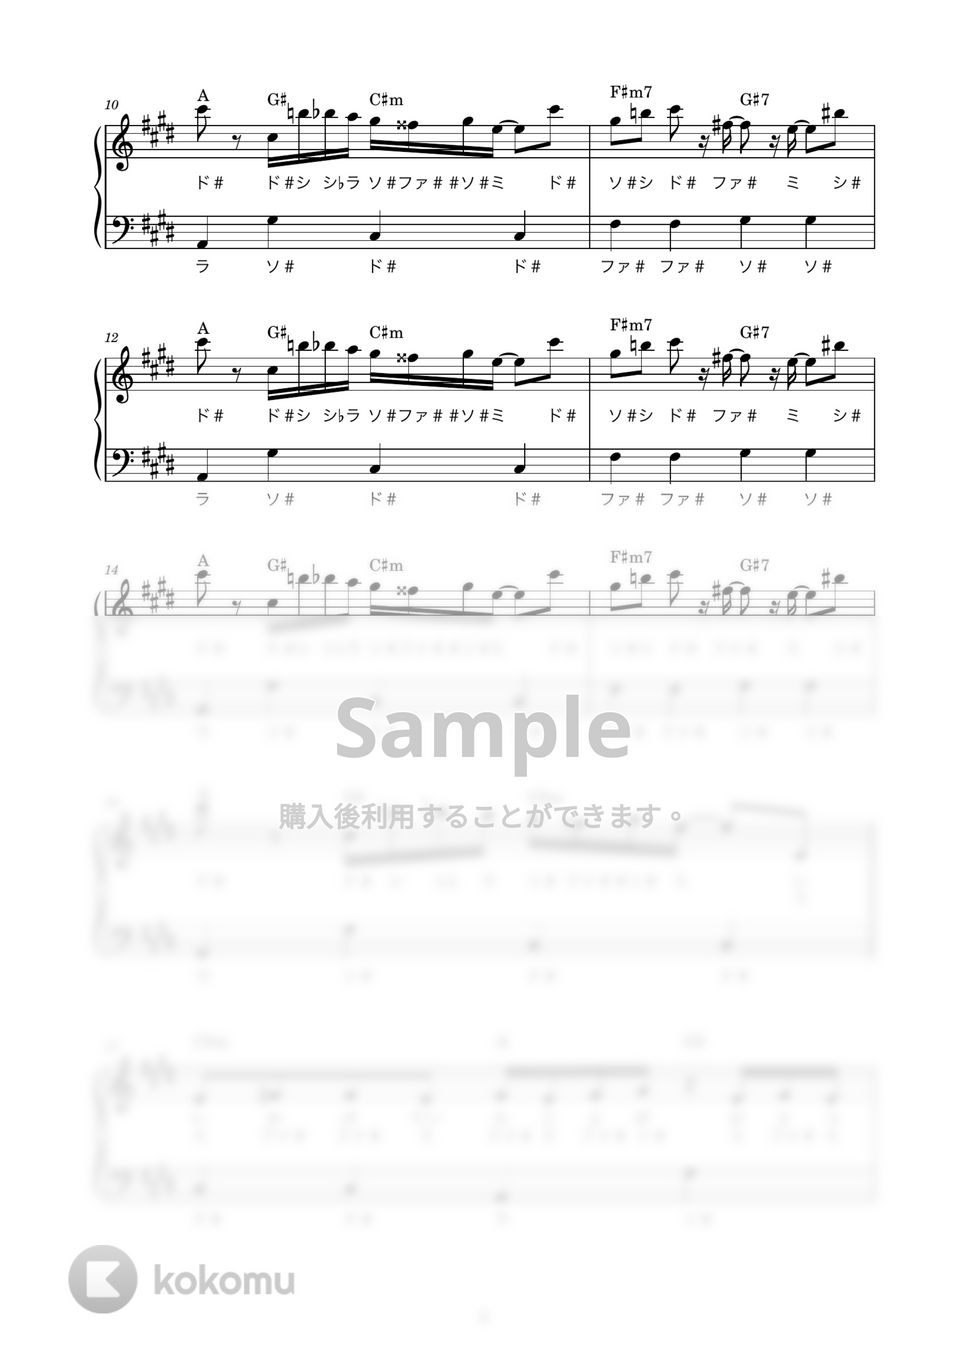 ぬゆり feat. Flower - ロウワー (かんたん / 歌詞付き / ドレミ付き / 初心者) by piano.tokyo